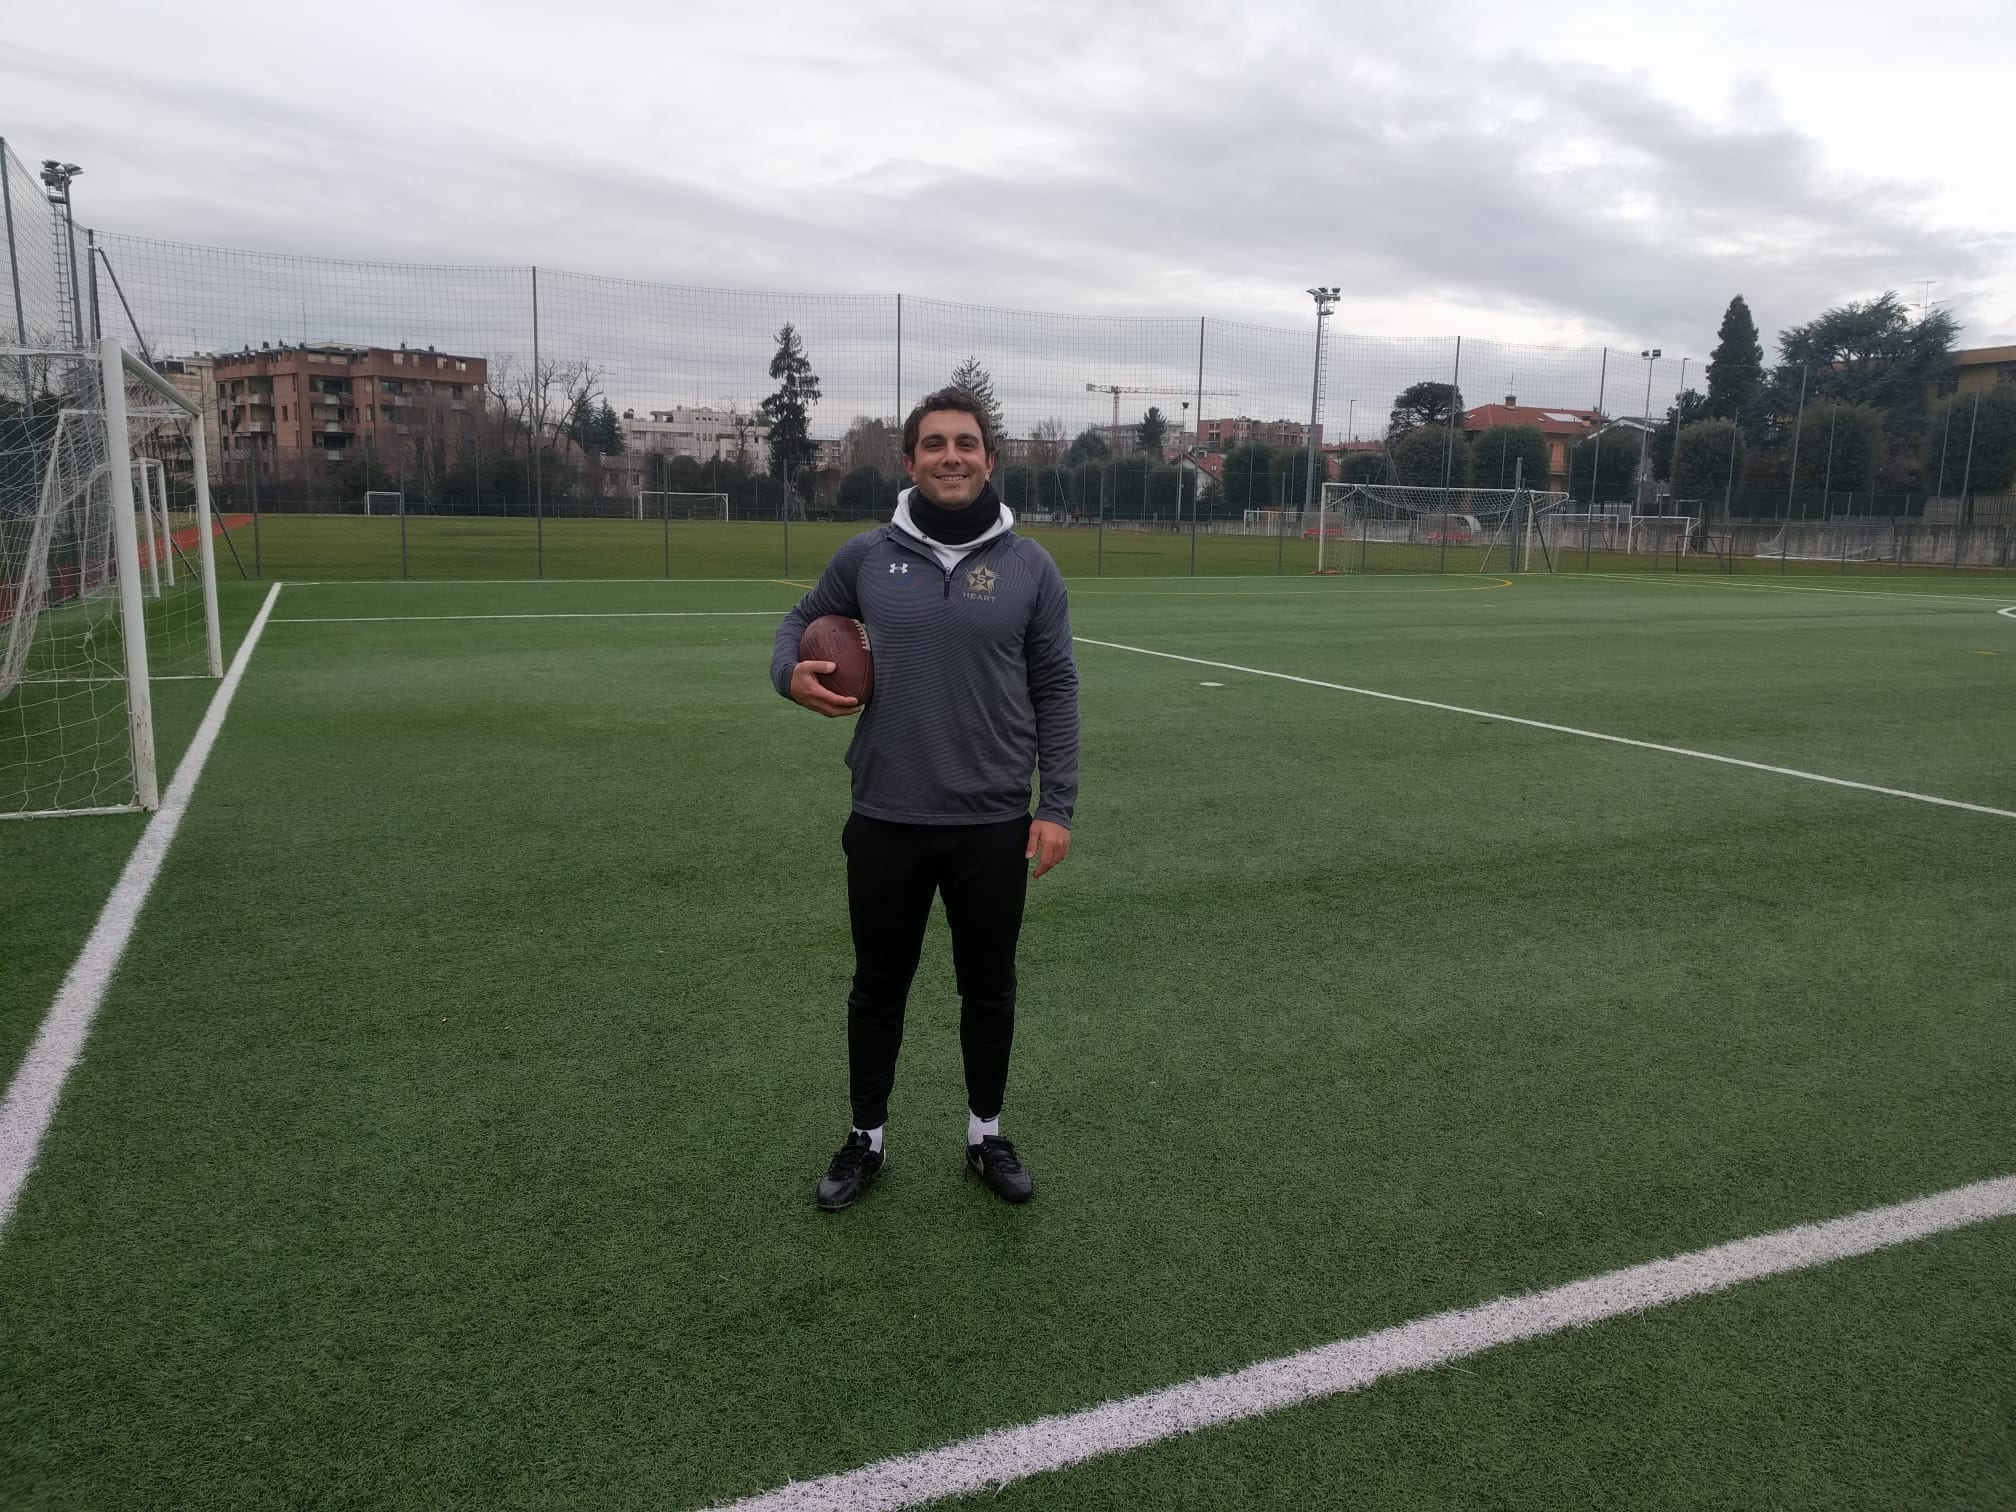 L’atleta Nfl Giorgio Tavecchio torna in città: si sta allenando al Centro Ronchi